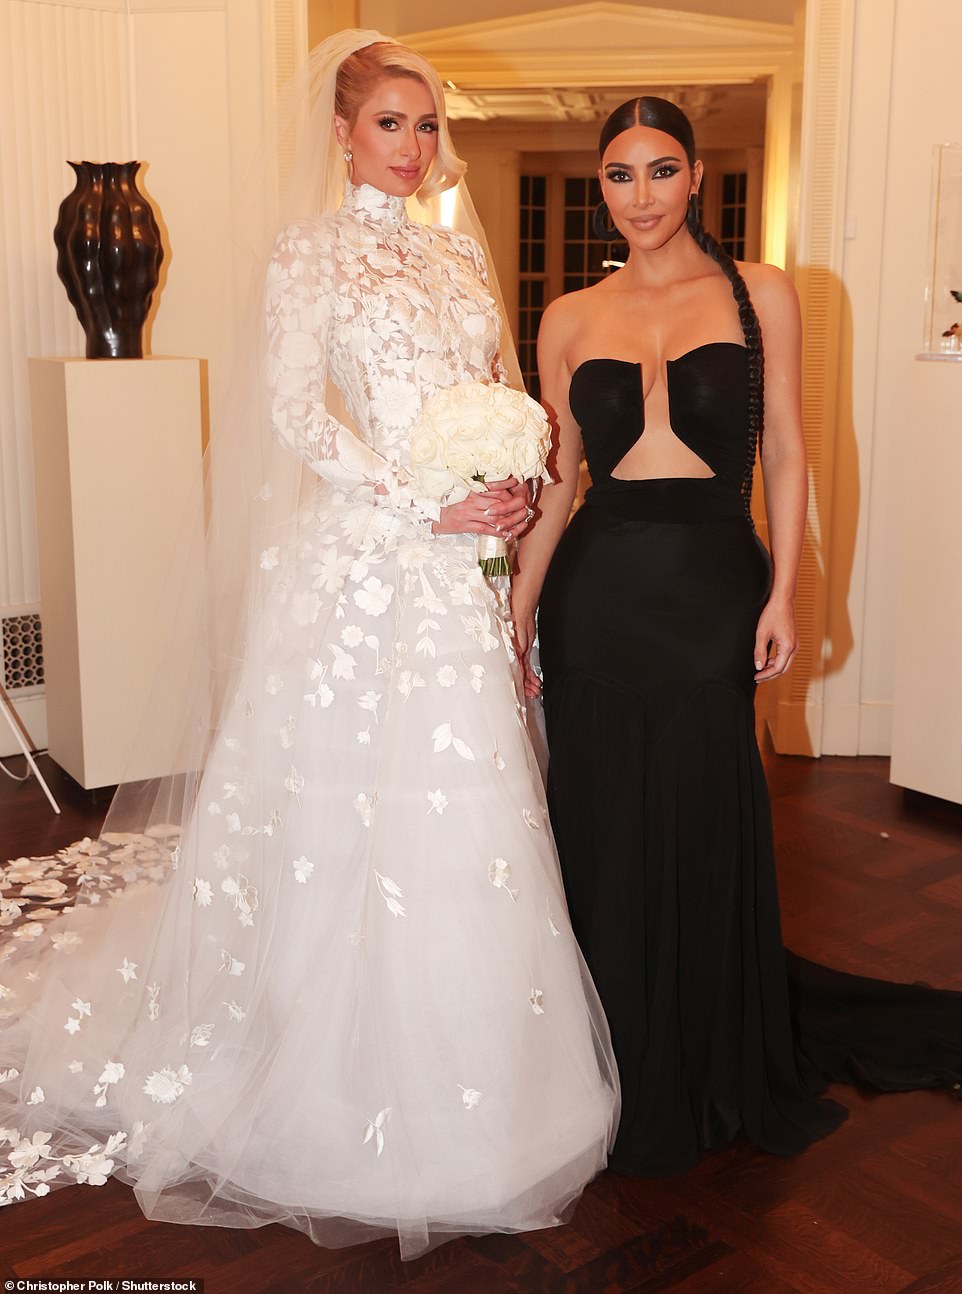 Siêu đám cưới Paris Hilton: Cô dâu thay 4 bộ váy lồng lộn, Kim Kardashian và dàn khách mời hạng A chặt chém xôi thịt ở khu đất 1300 tỷ - Ảnh 17.